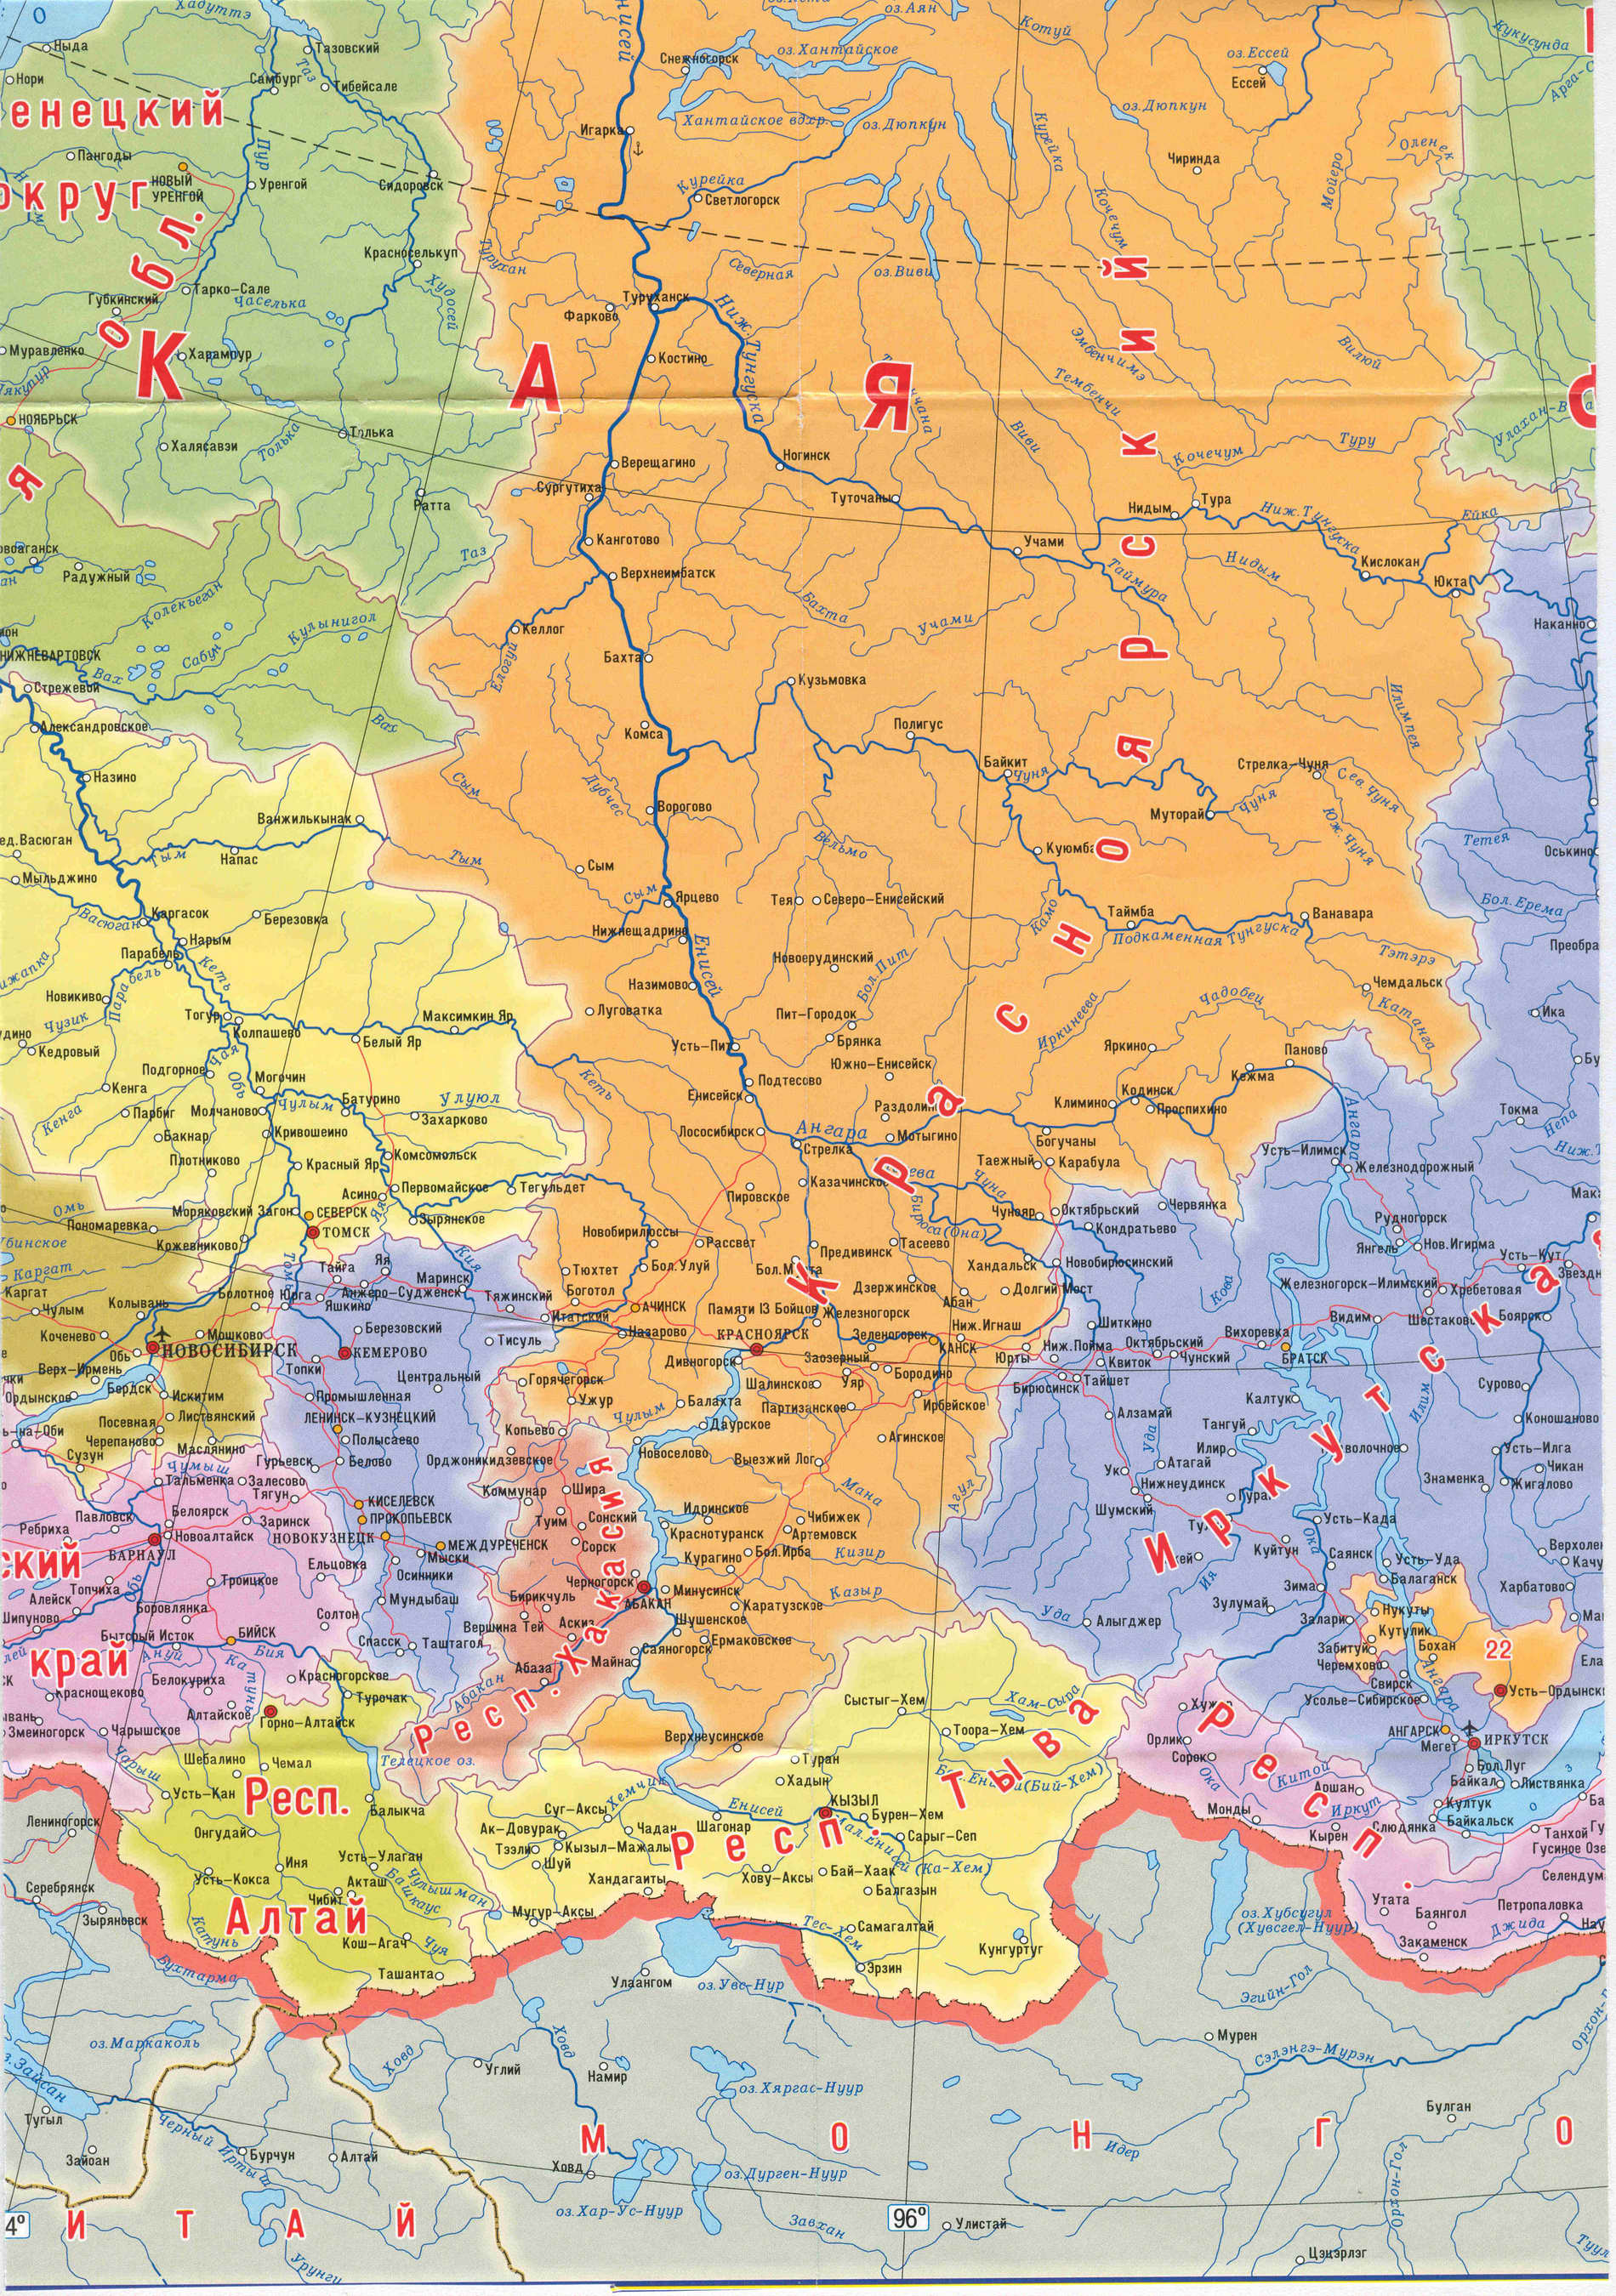 Подробная карта России. Подробная карта регионов России. Карта России с областями, республиками, краями, C1 - 